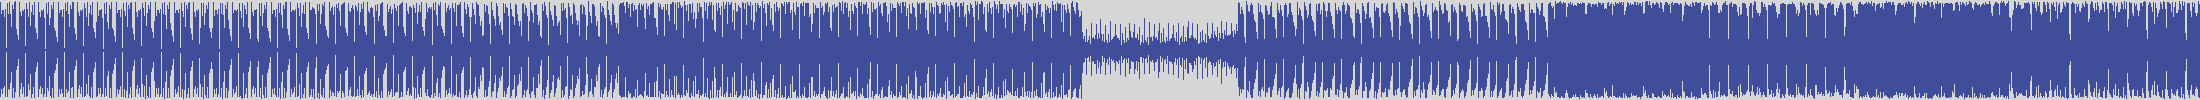 nf_boyz_records [NFY020] Jimmy Crash - Punkyntosh [Cool Mix] audio wave form